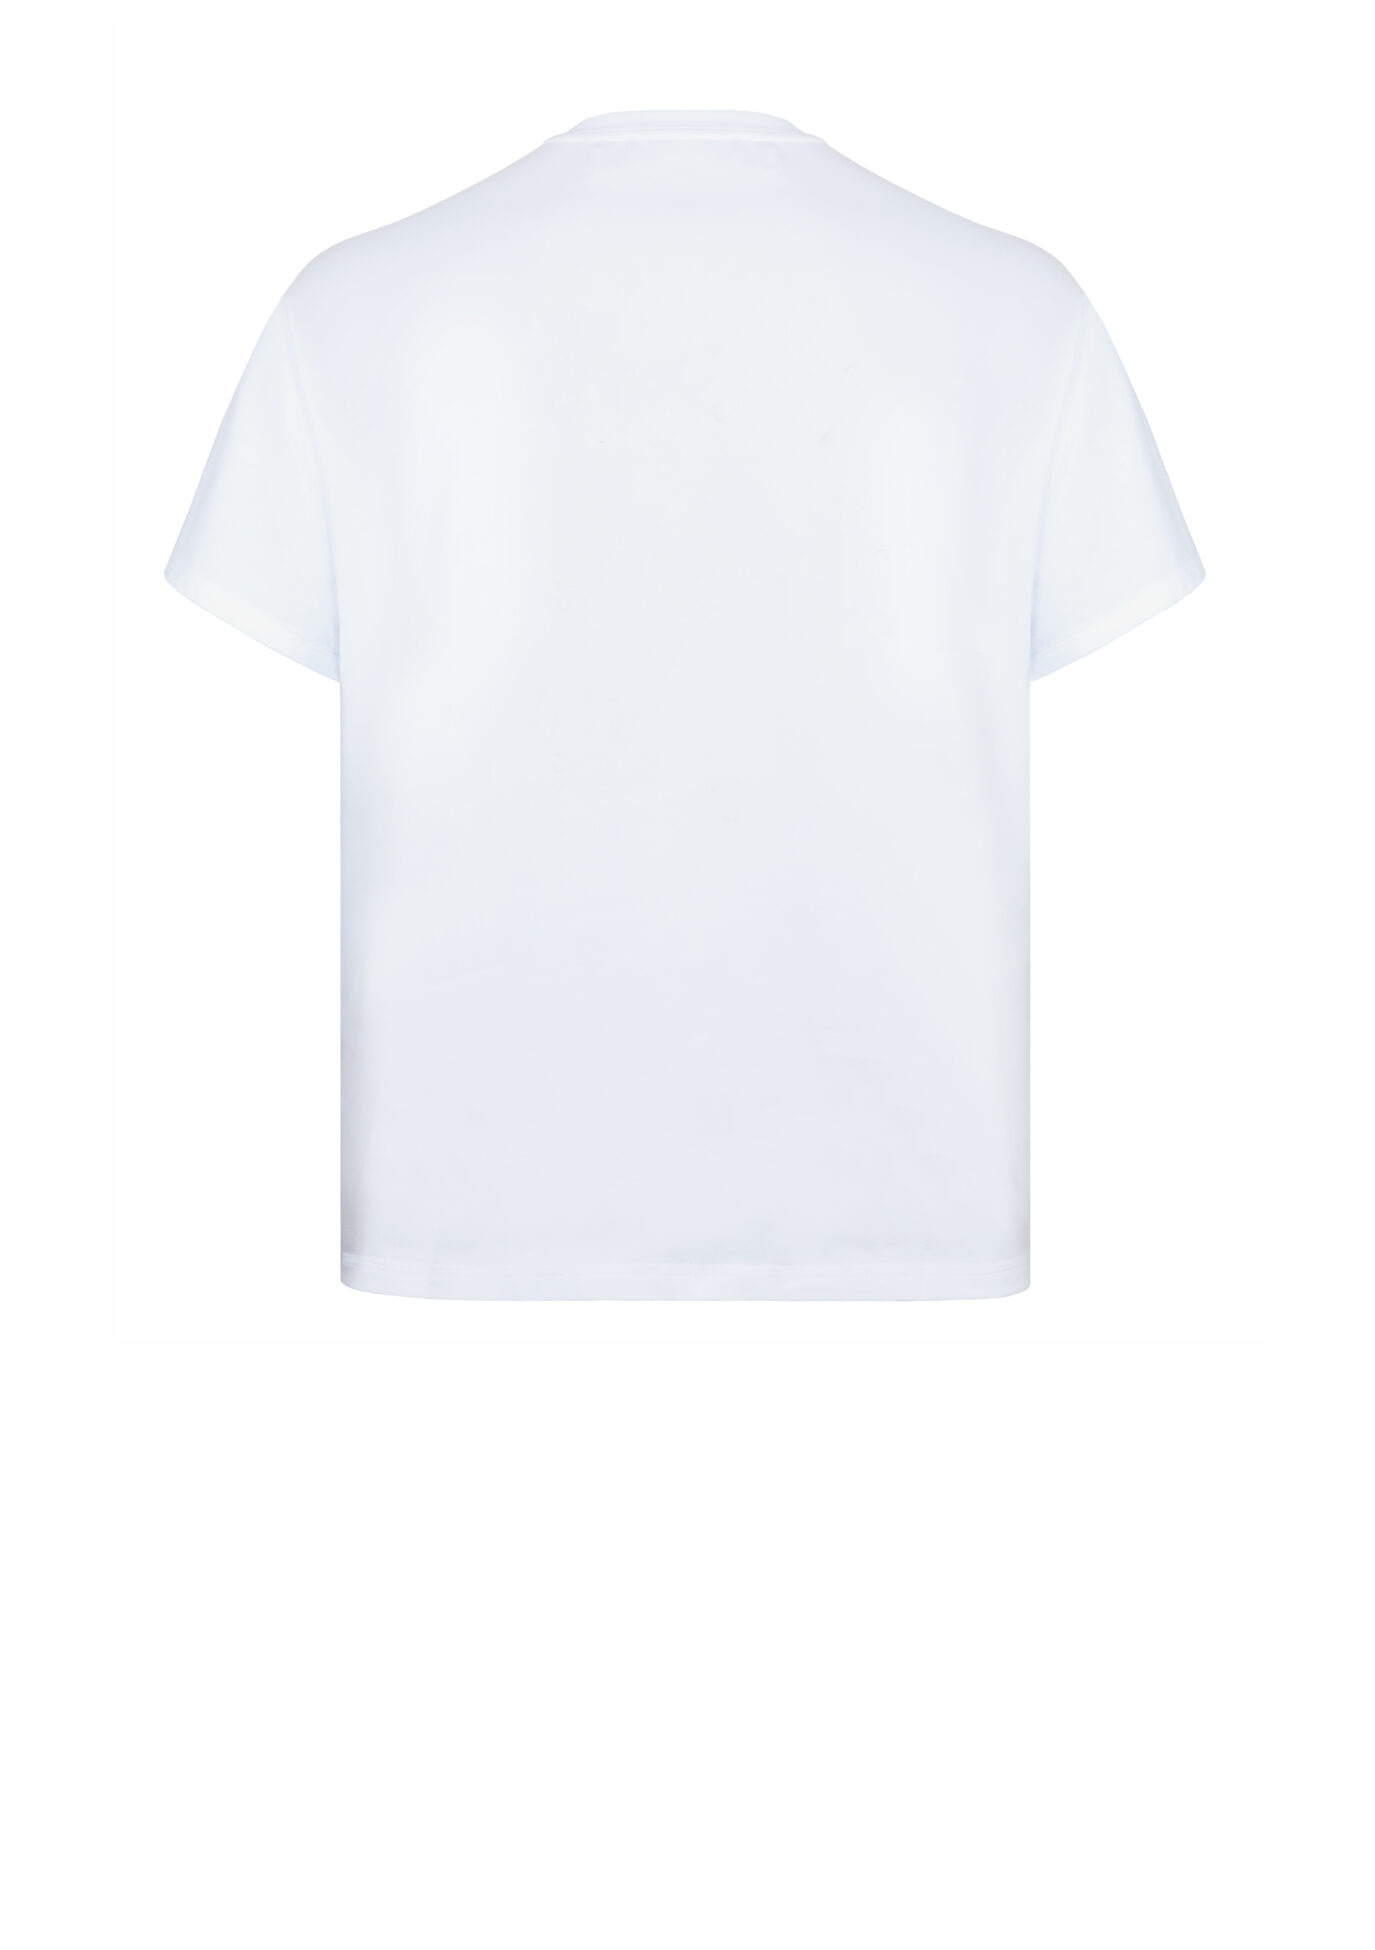 T-Shirt, weiß, von Designer Stefan Eckert, aus Bio-Baumwolle, nachhaltig produziert in Deutschland, für Damen und Herren